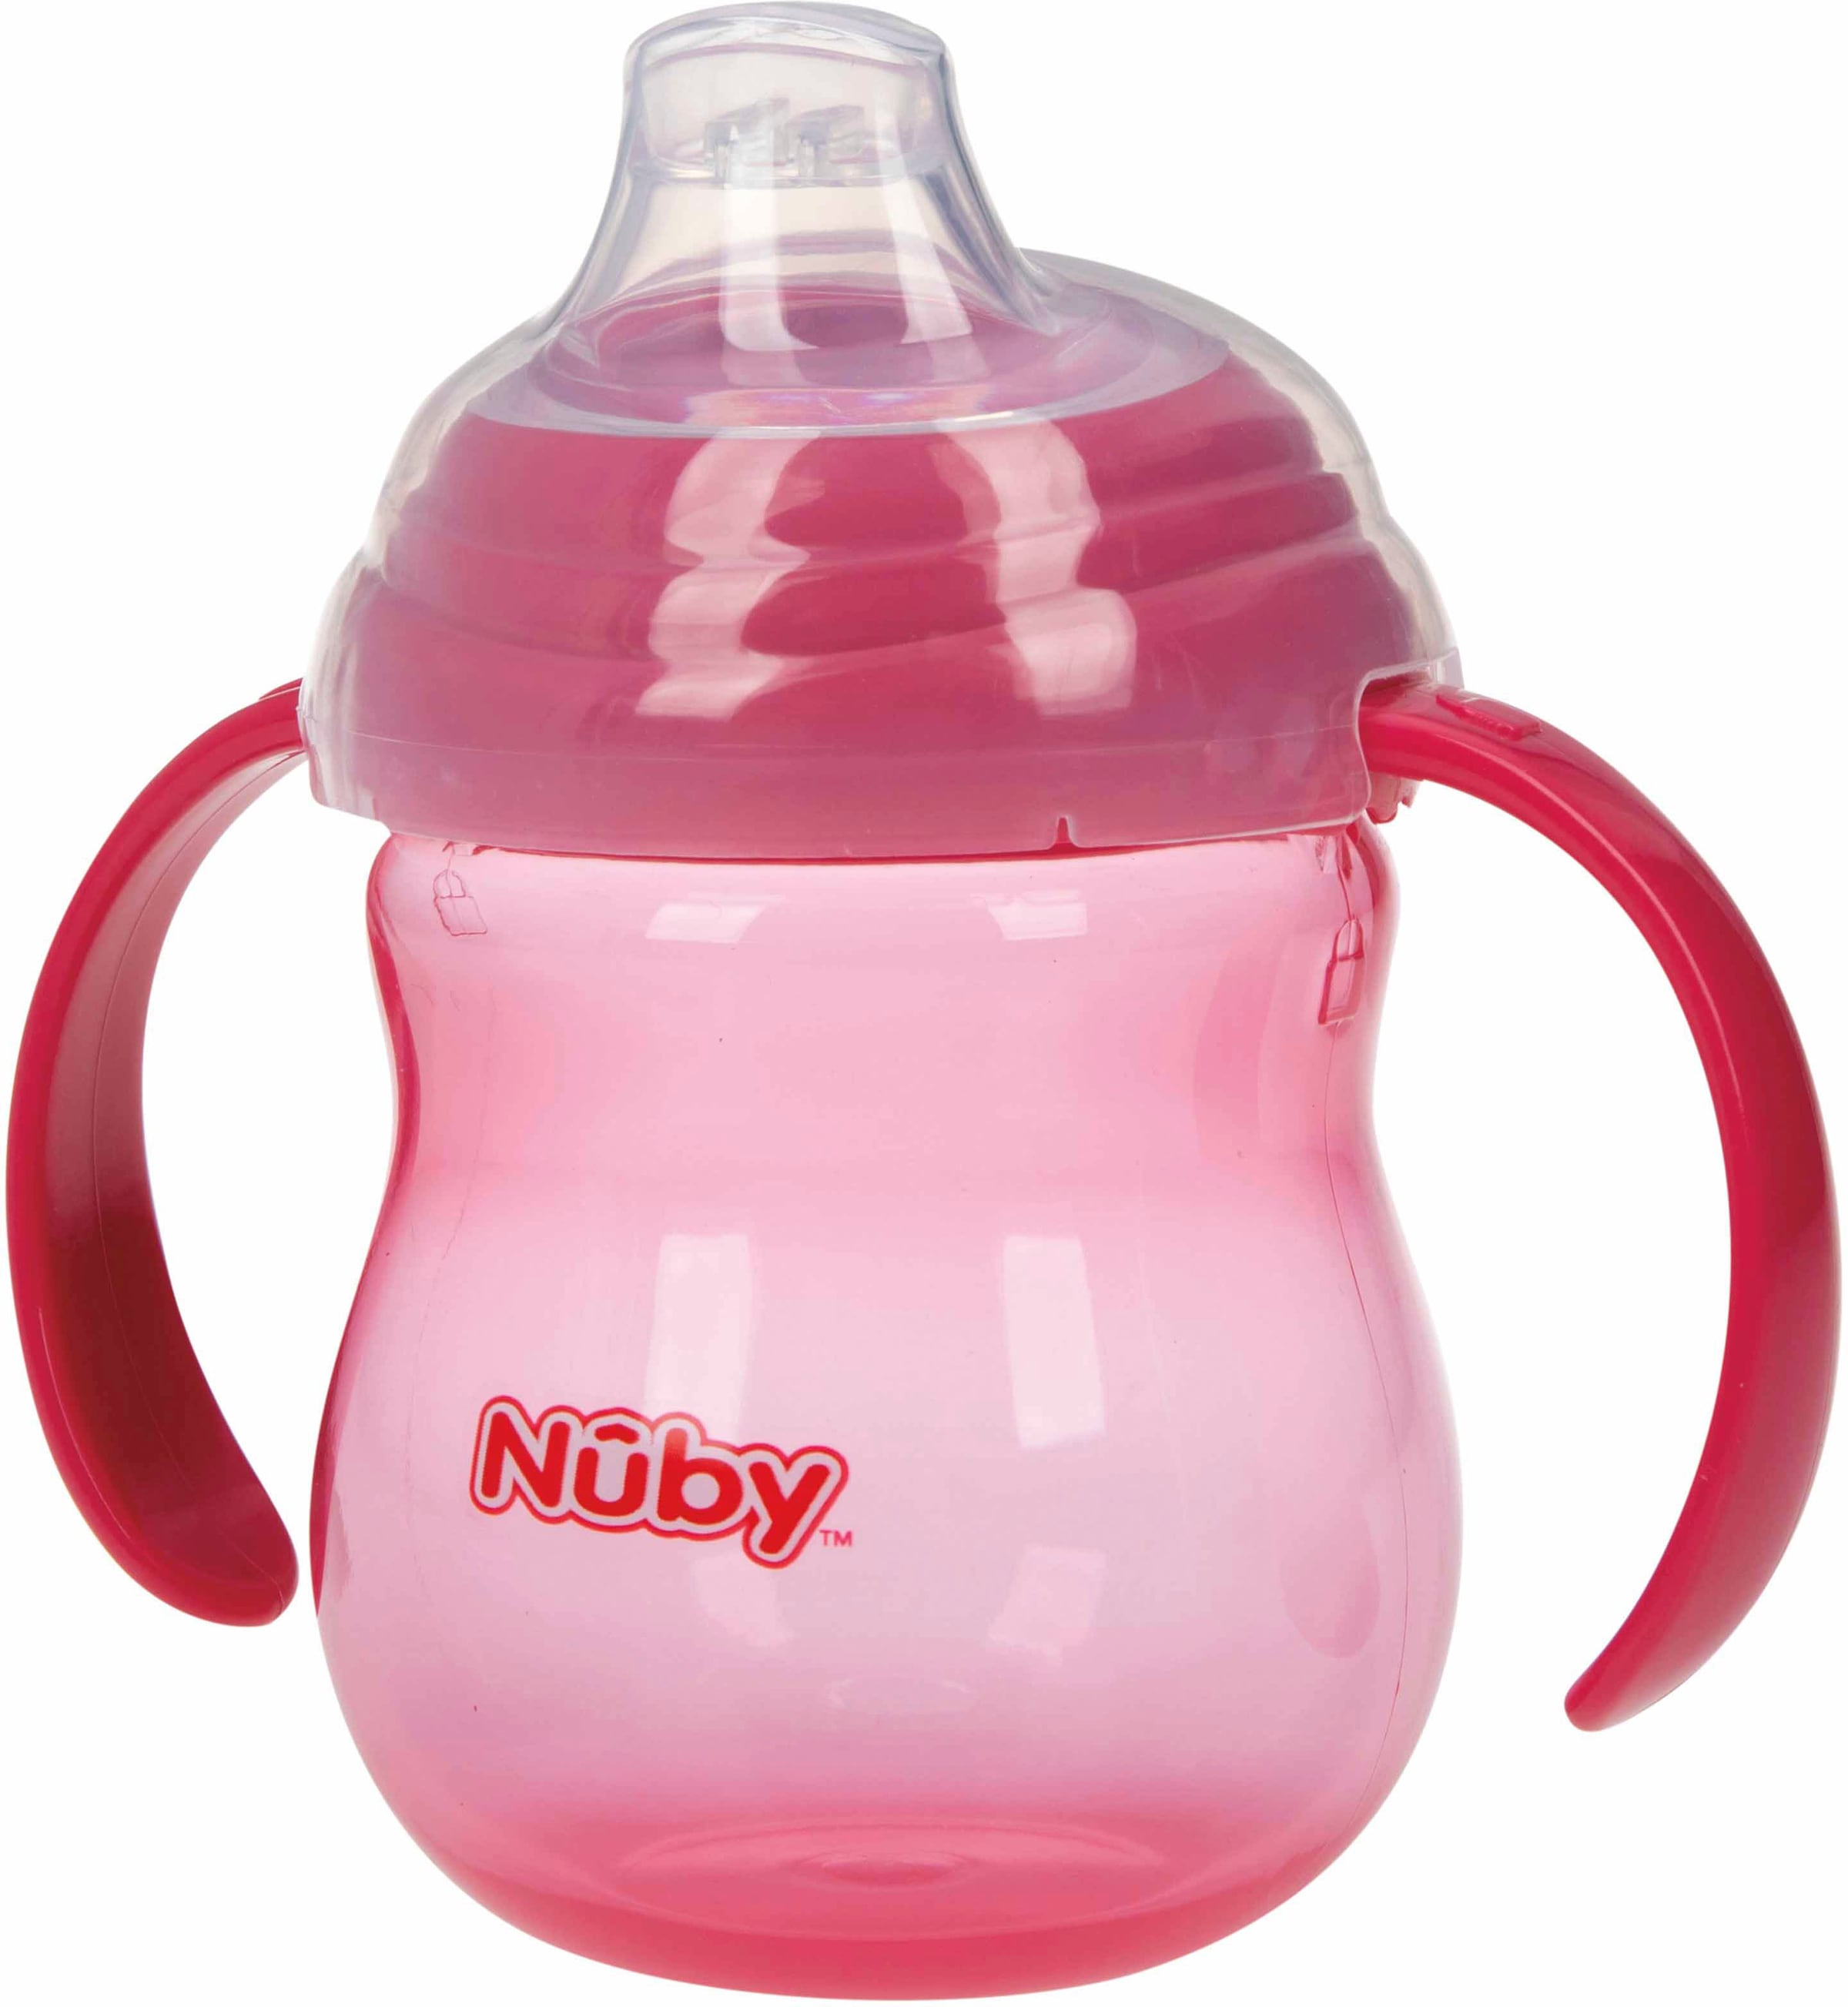 Nuby Trinklernbecher »270ml, pink«, mit Schutzkappe